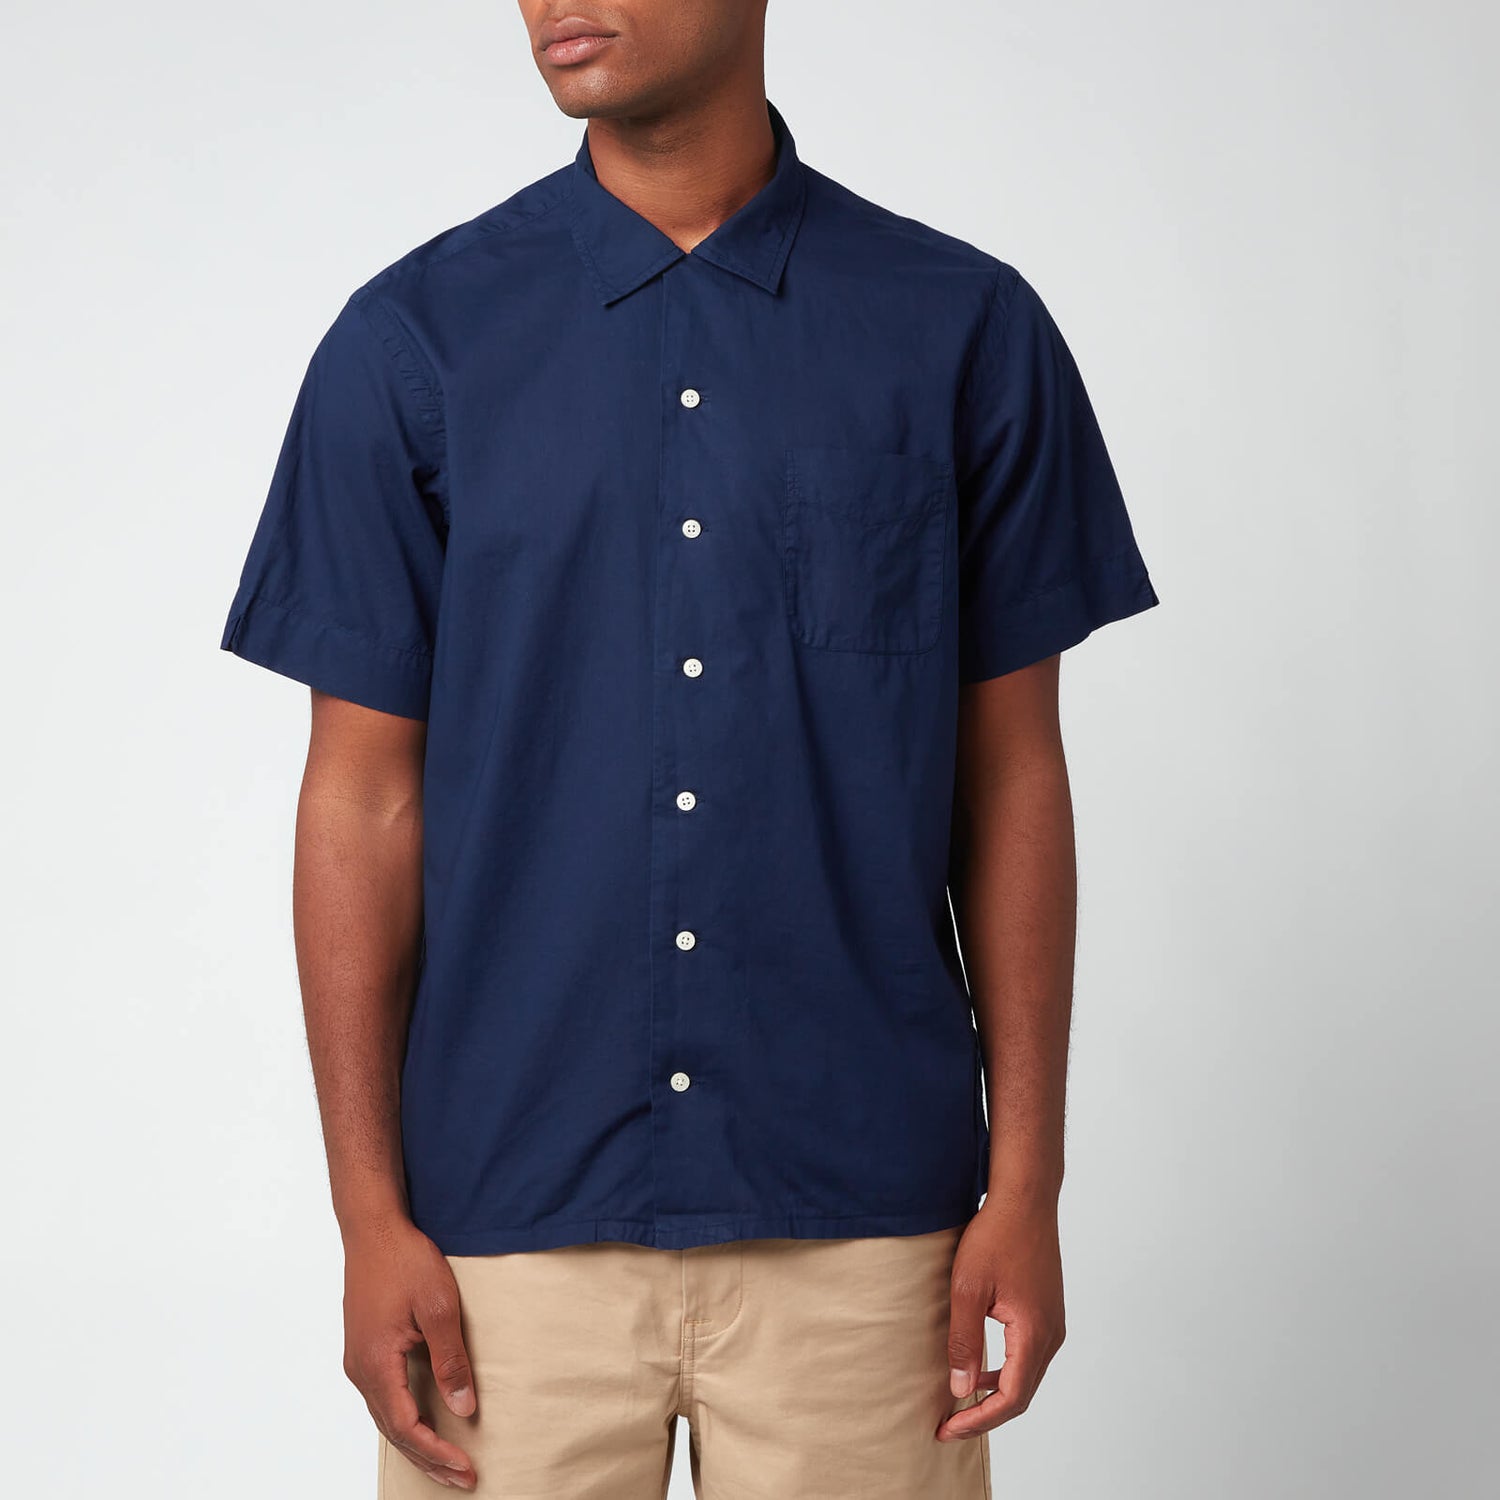 Polo Ralph Lauren Men's Cotton Short Sleeve Shirt - Newport Navy - S